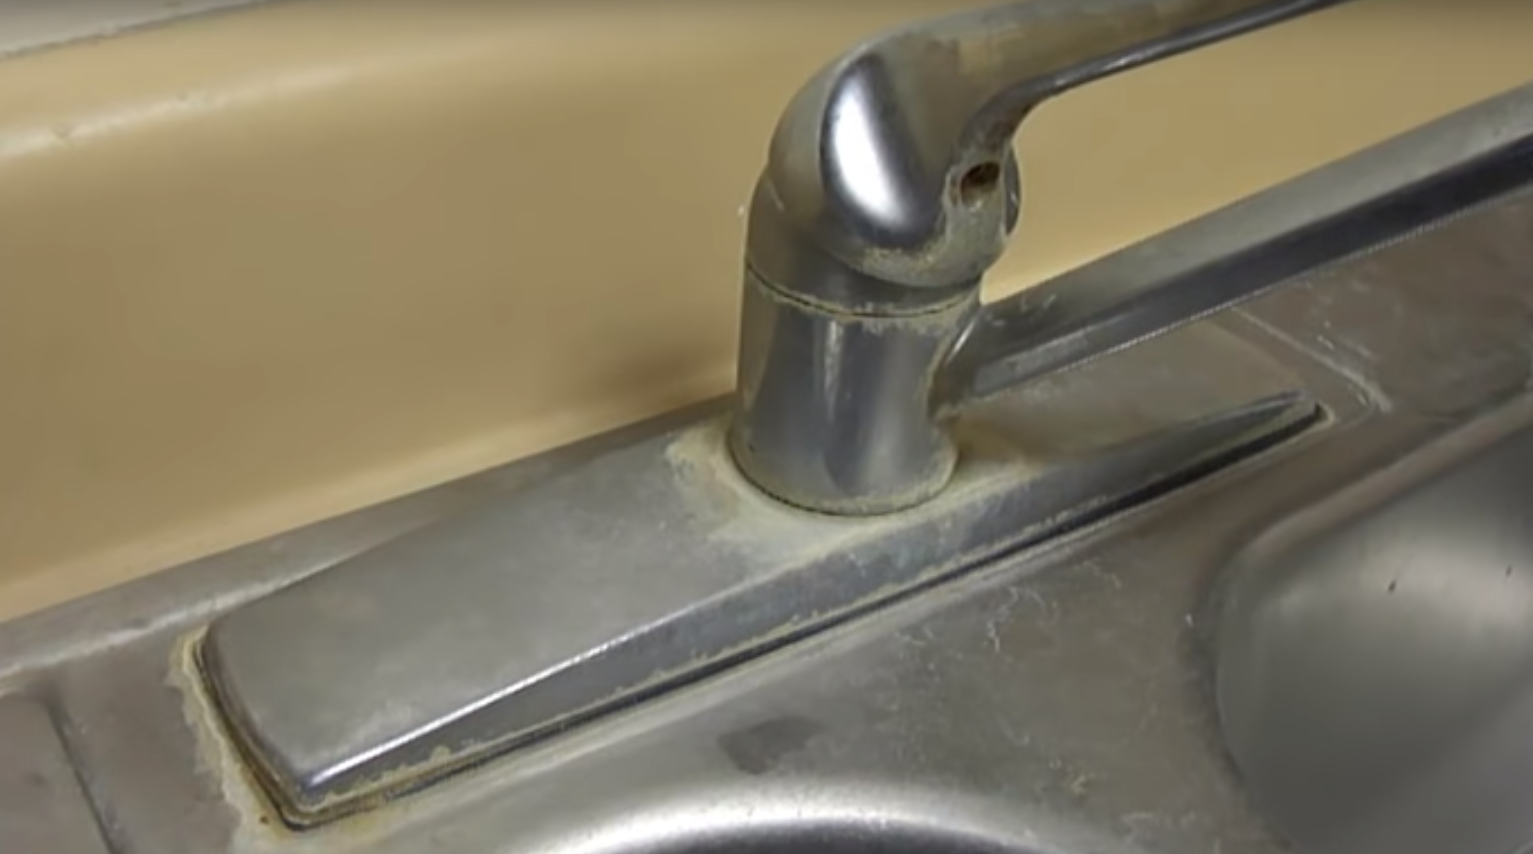 Πώς βγαίνουν εύκολα τα άλατα στον νεροχύτη και την βρύση; (βίντεο)